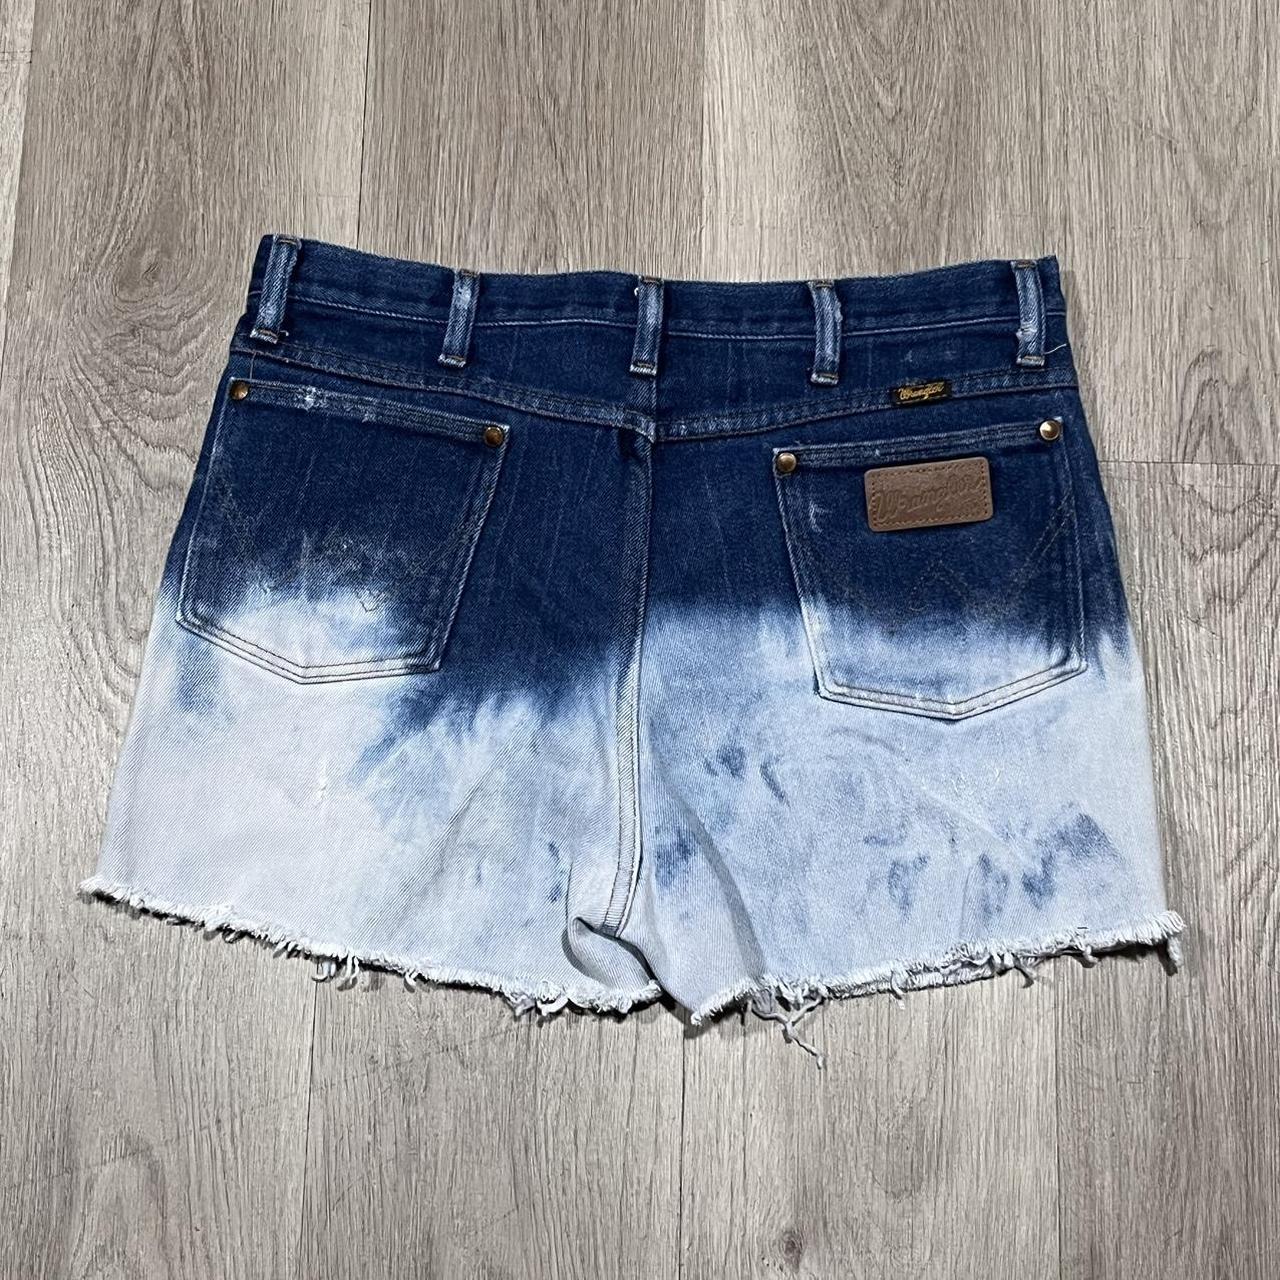 Nina Carter Capri 3/4 Kurze 5 Pocket - Denim shorts - dark blue - Zalando.de